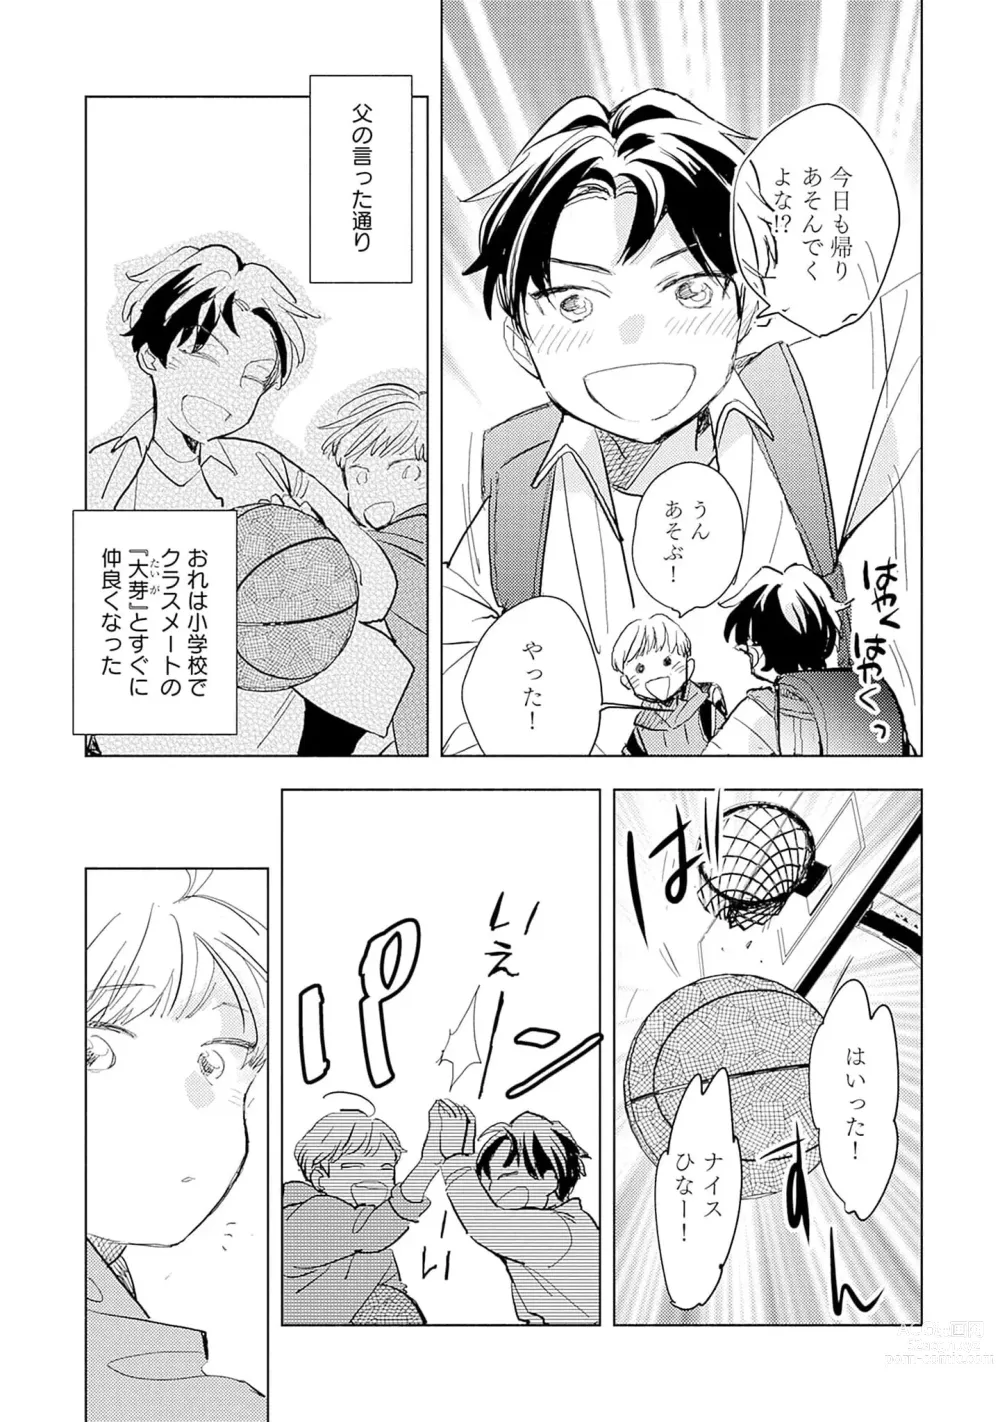 Page 9 of manga Strawberry na Days 2